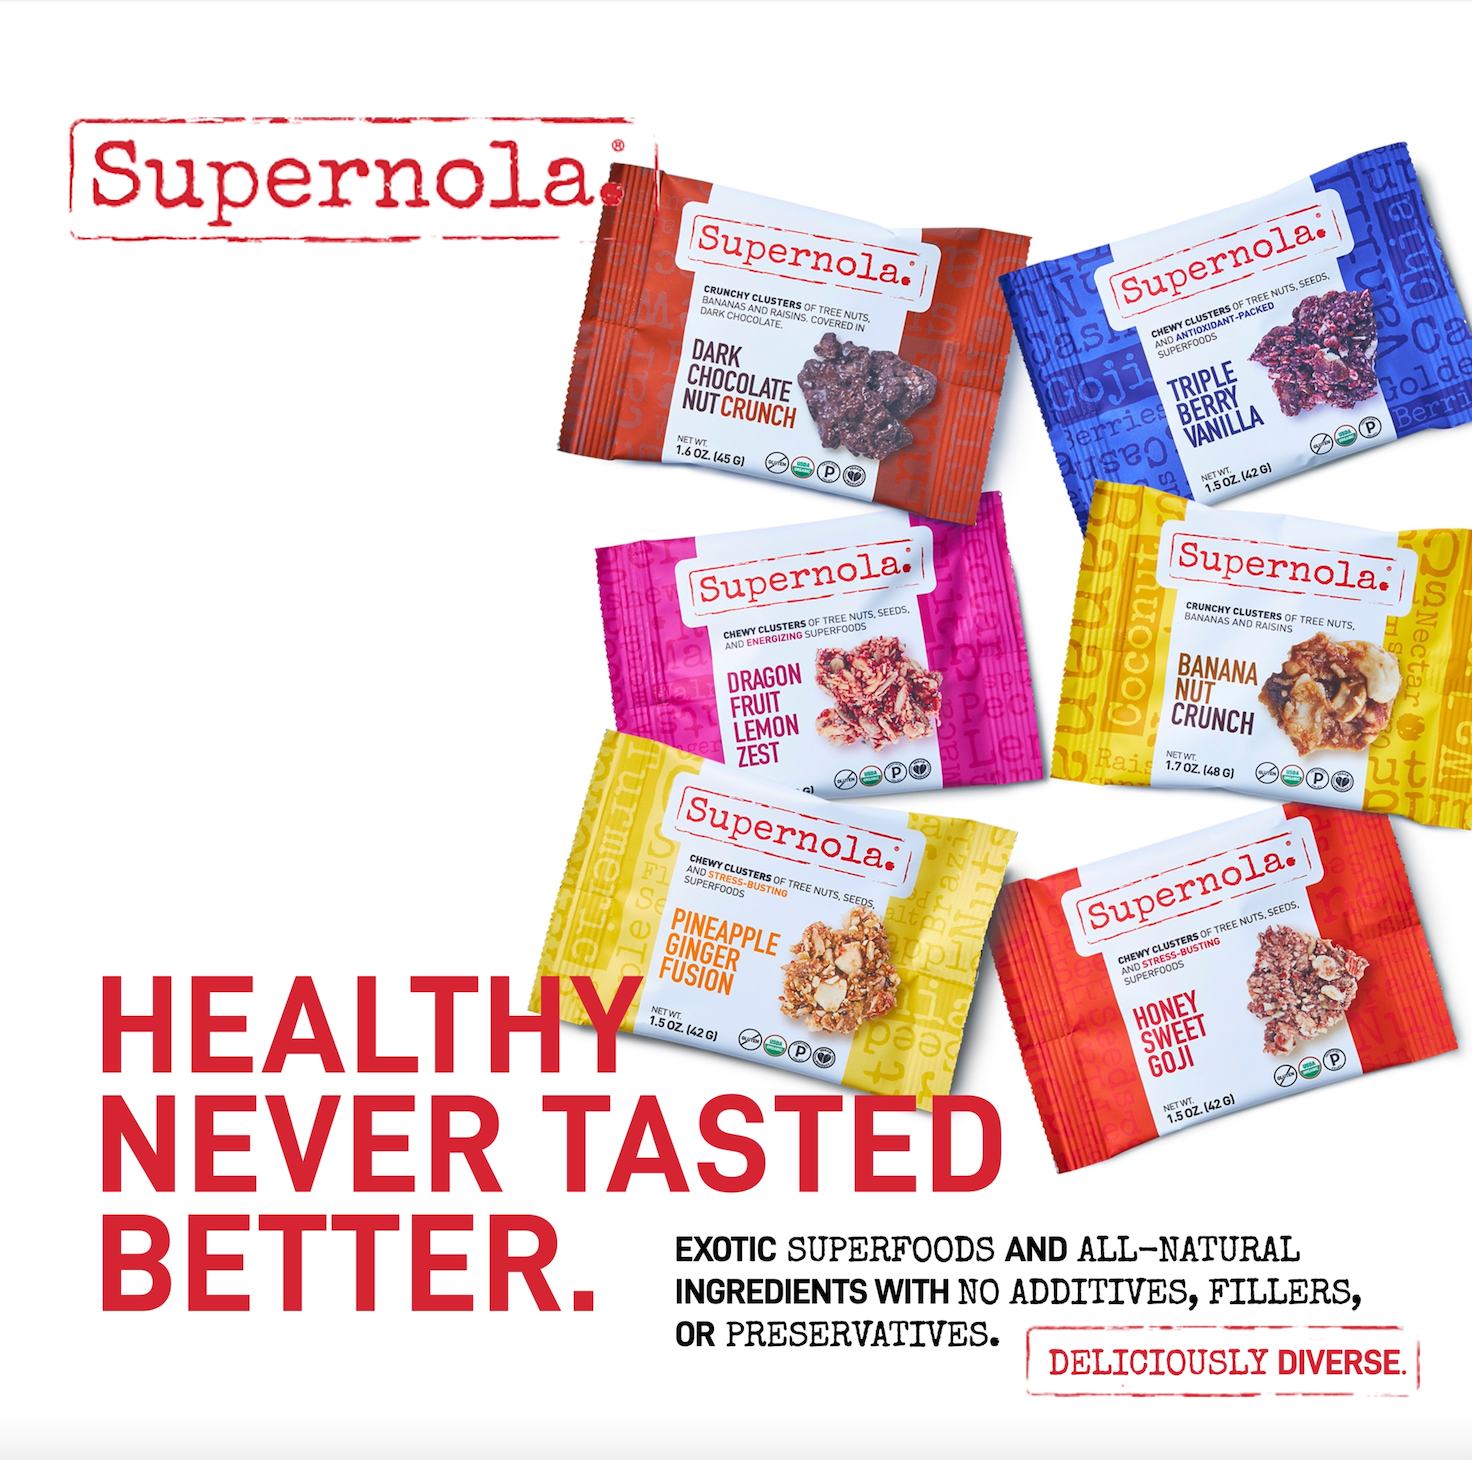 Supernola Sample 6-Pack Offer (1 each flavor)